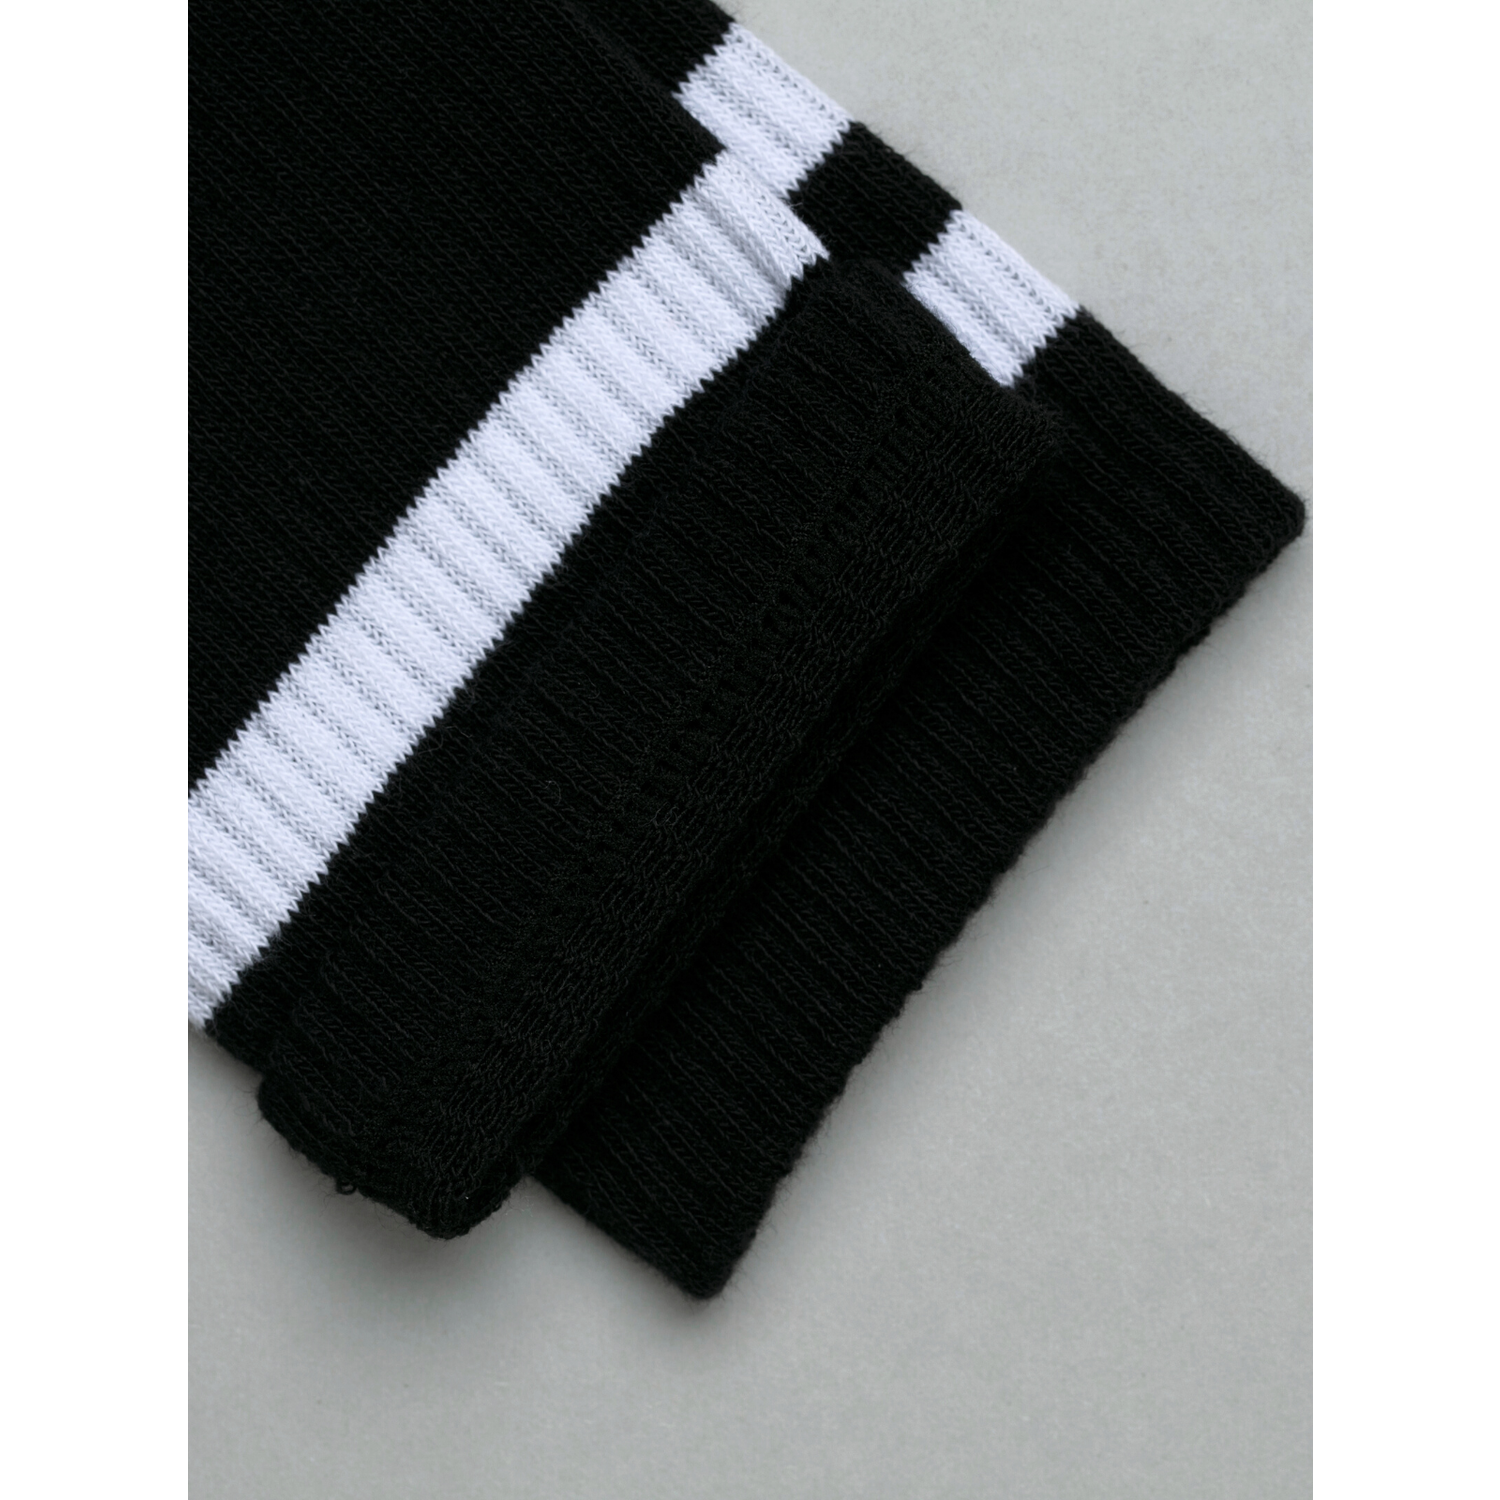 Носки 3 пары ALEX YVN M-1809-3 черный с белыми полосками - фото 6